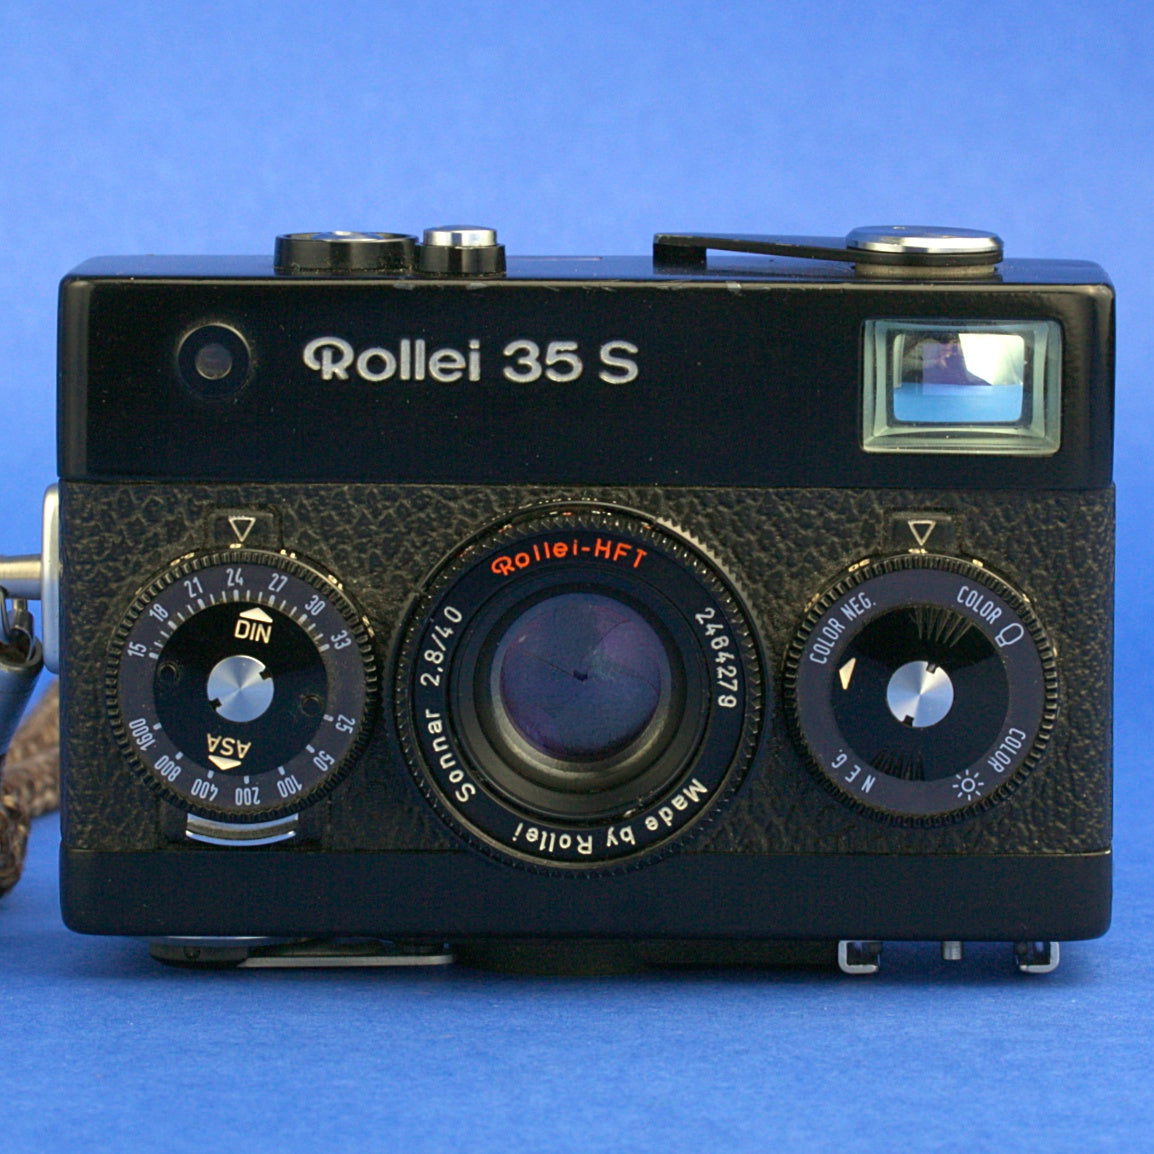 Rollei 35 S Film Camera